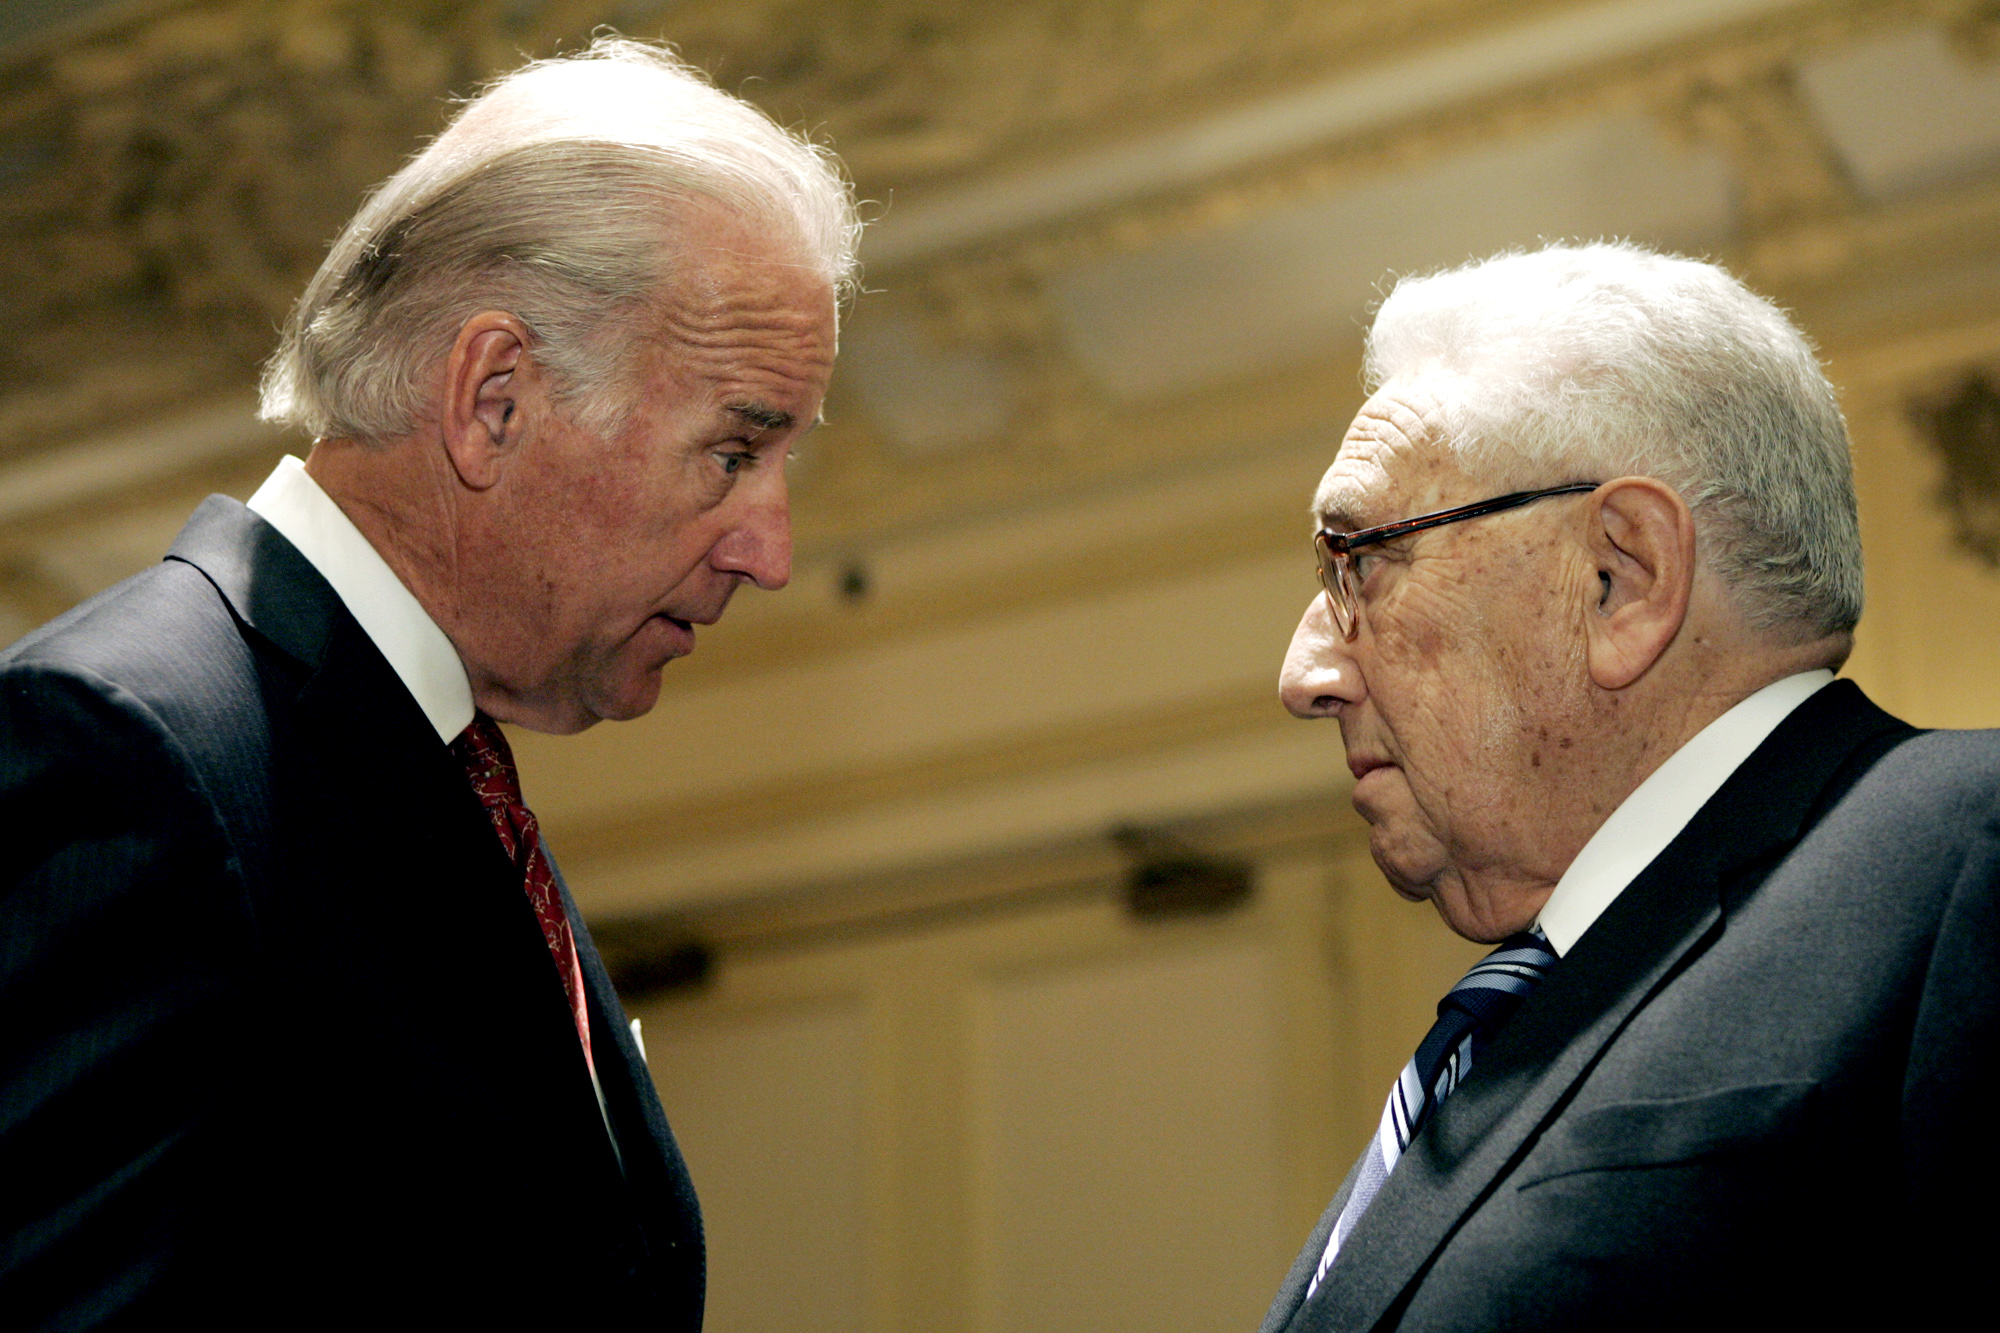 Biden and Kissinger